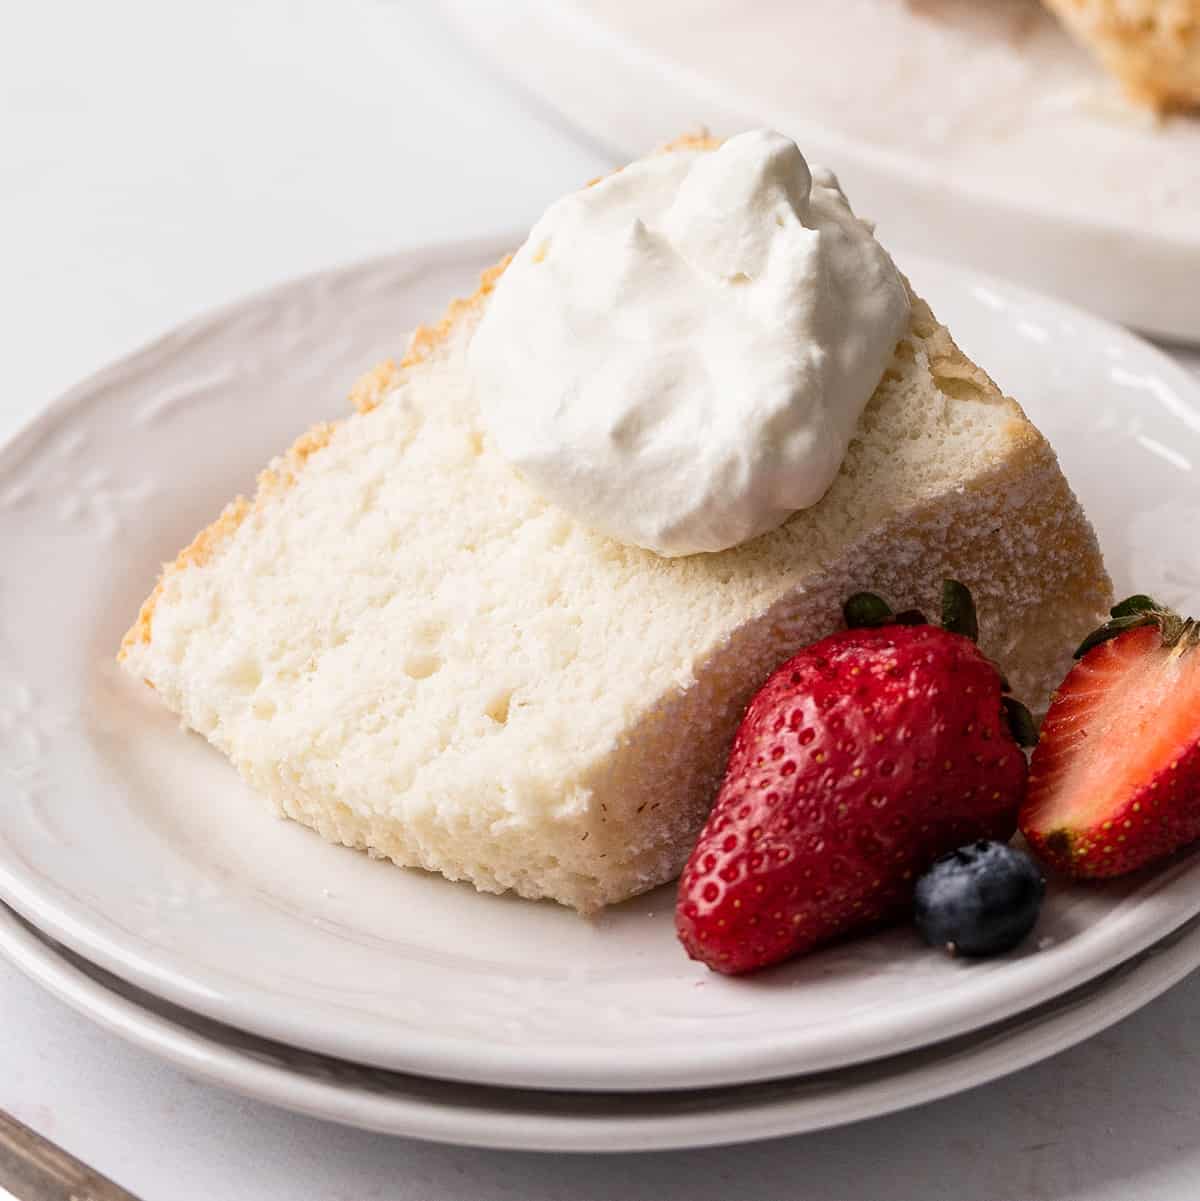 https://joyfoodsunshine.com/wp-content/uploads/2022/05/homemade-angel-food-cake-recipe-12.jpg